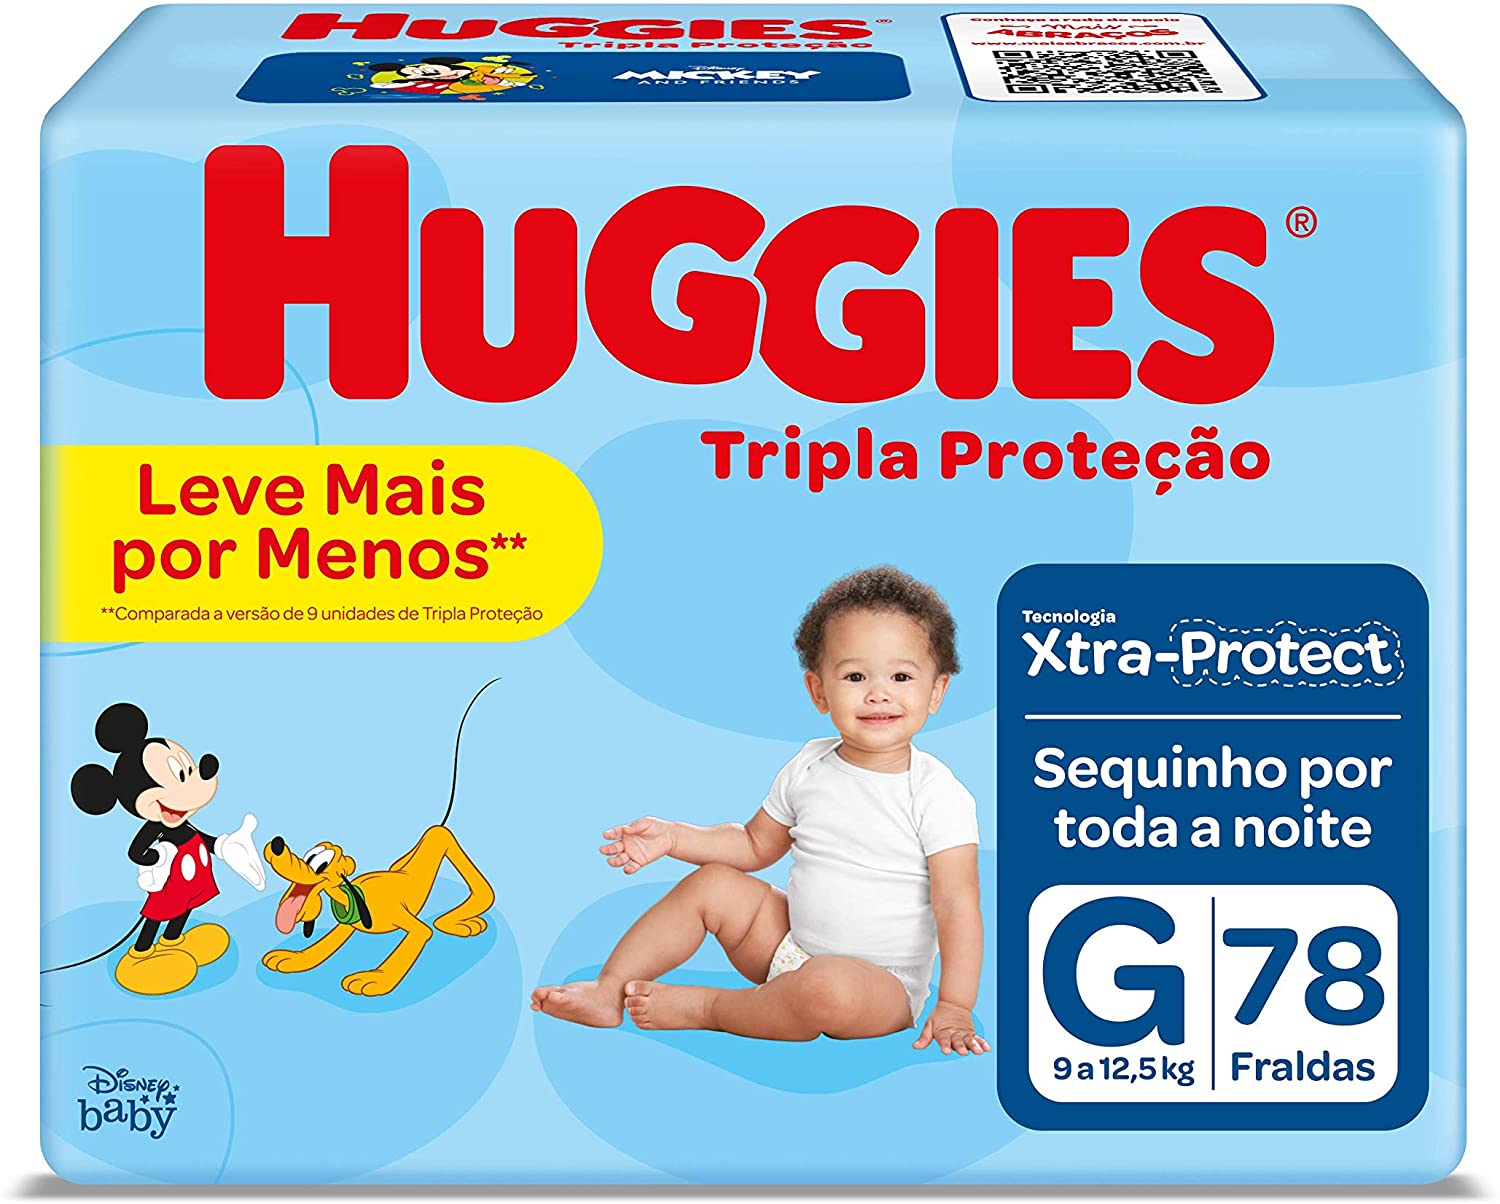 7896007549269 - FRALDA DESCARTÁVEL INFANTIL HUGGIES TRIPLA PROTEÇÃO G PACOTE 78 UNIDADES LEVE MAIS PAGUE MENOS